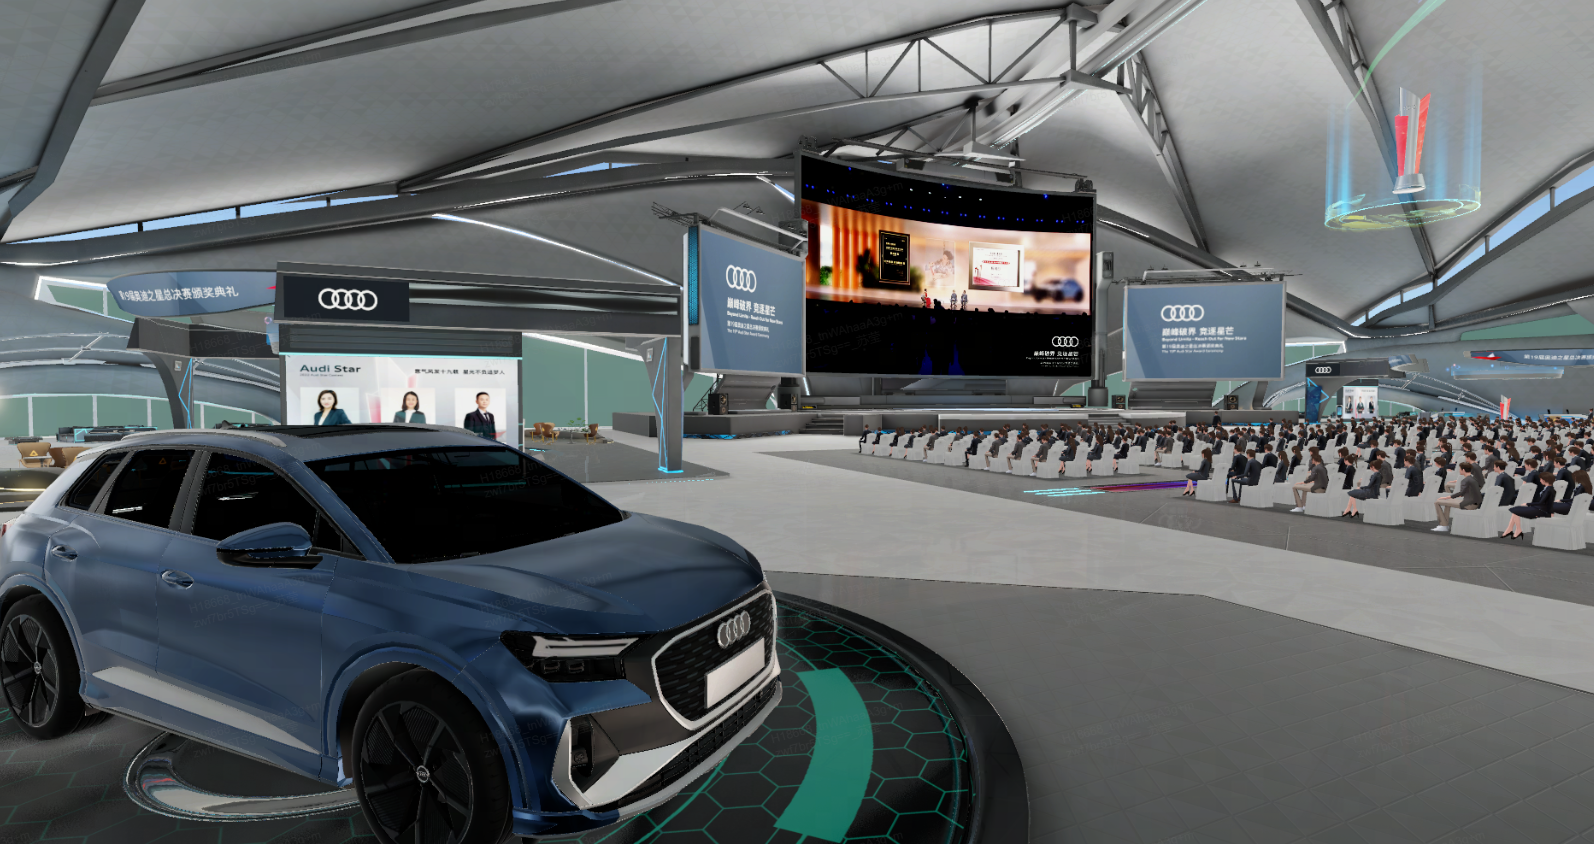 这是一张展示奥迪汽车在现代展览厅内的图片，有观众坐着，屏幕播放宣传片，展厅设计现代化。